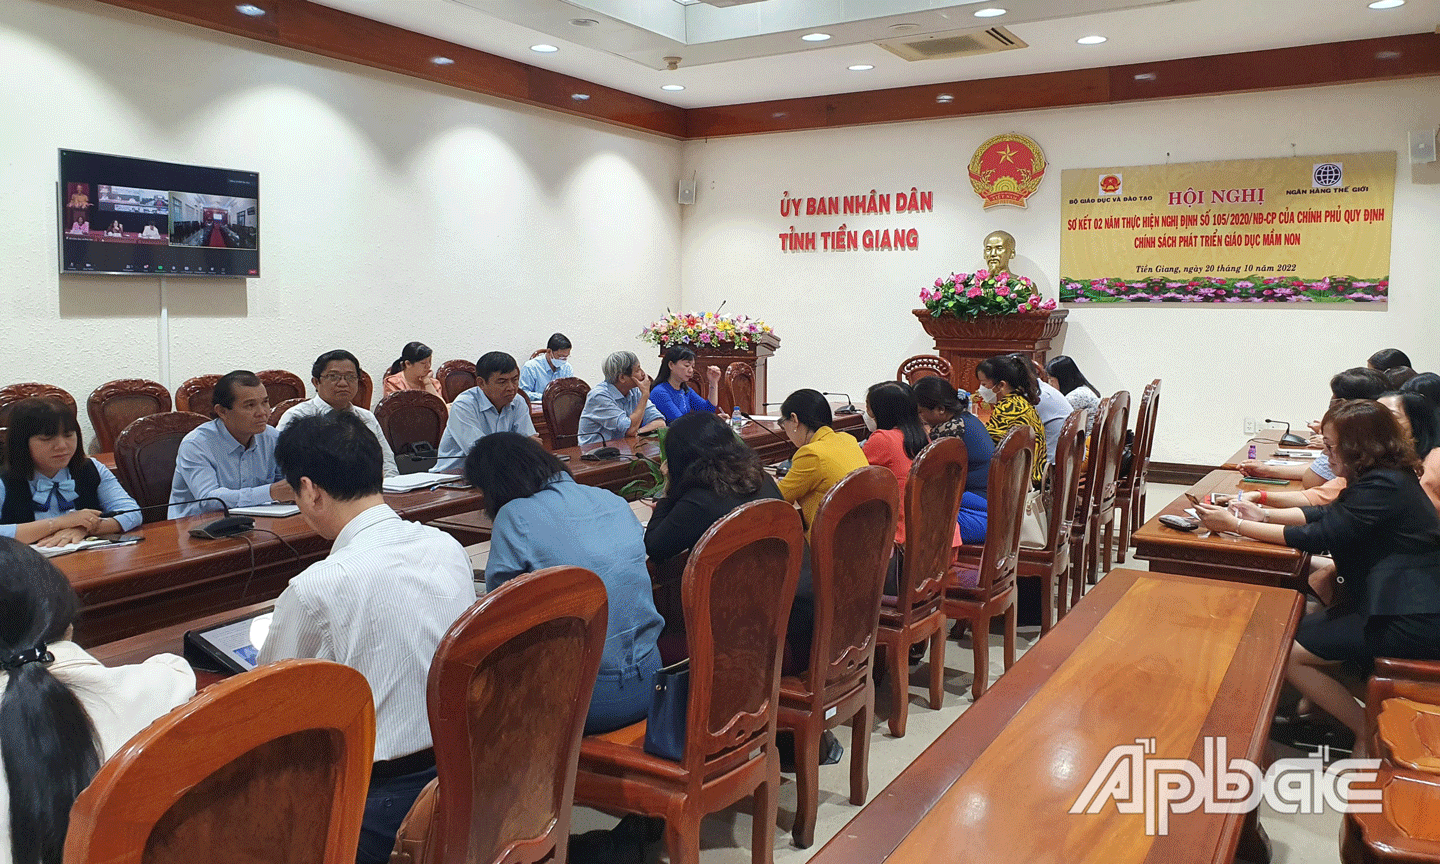 Quang cảnh tại điểm cầu tỉnh Tiền Giang. 